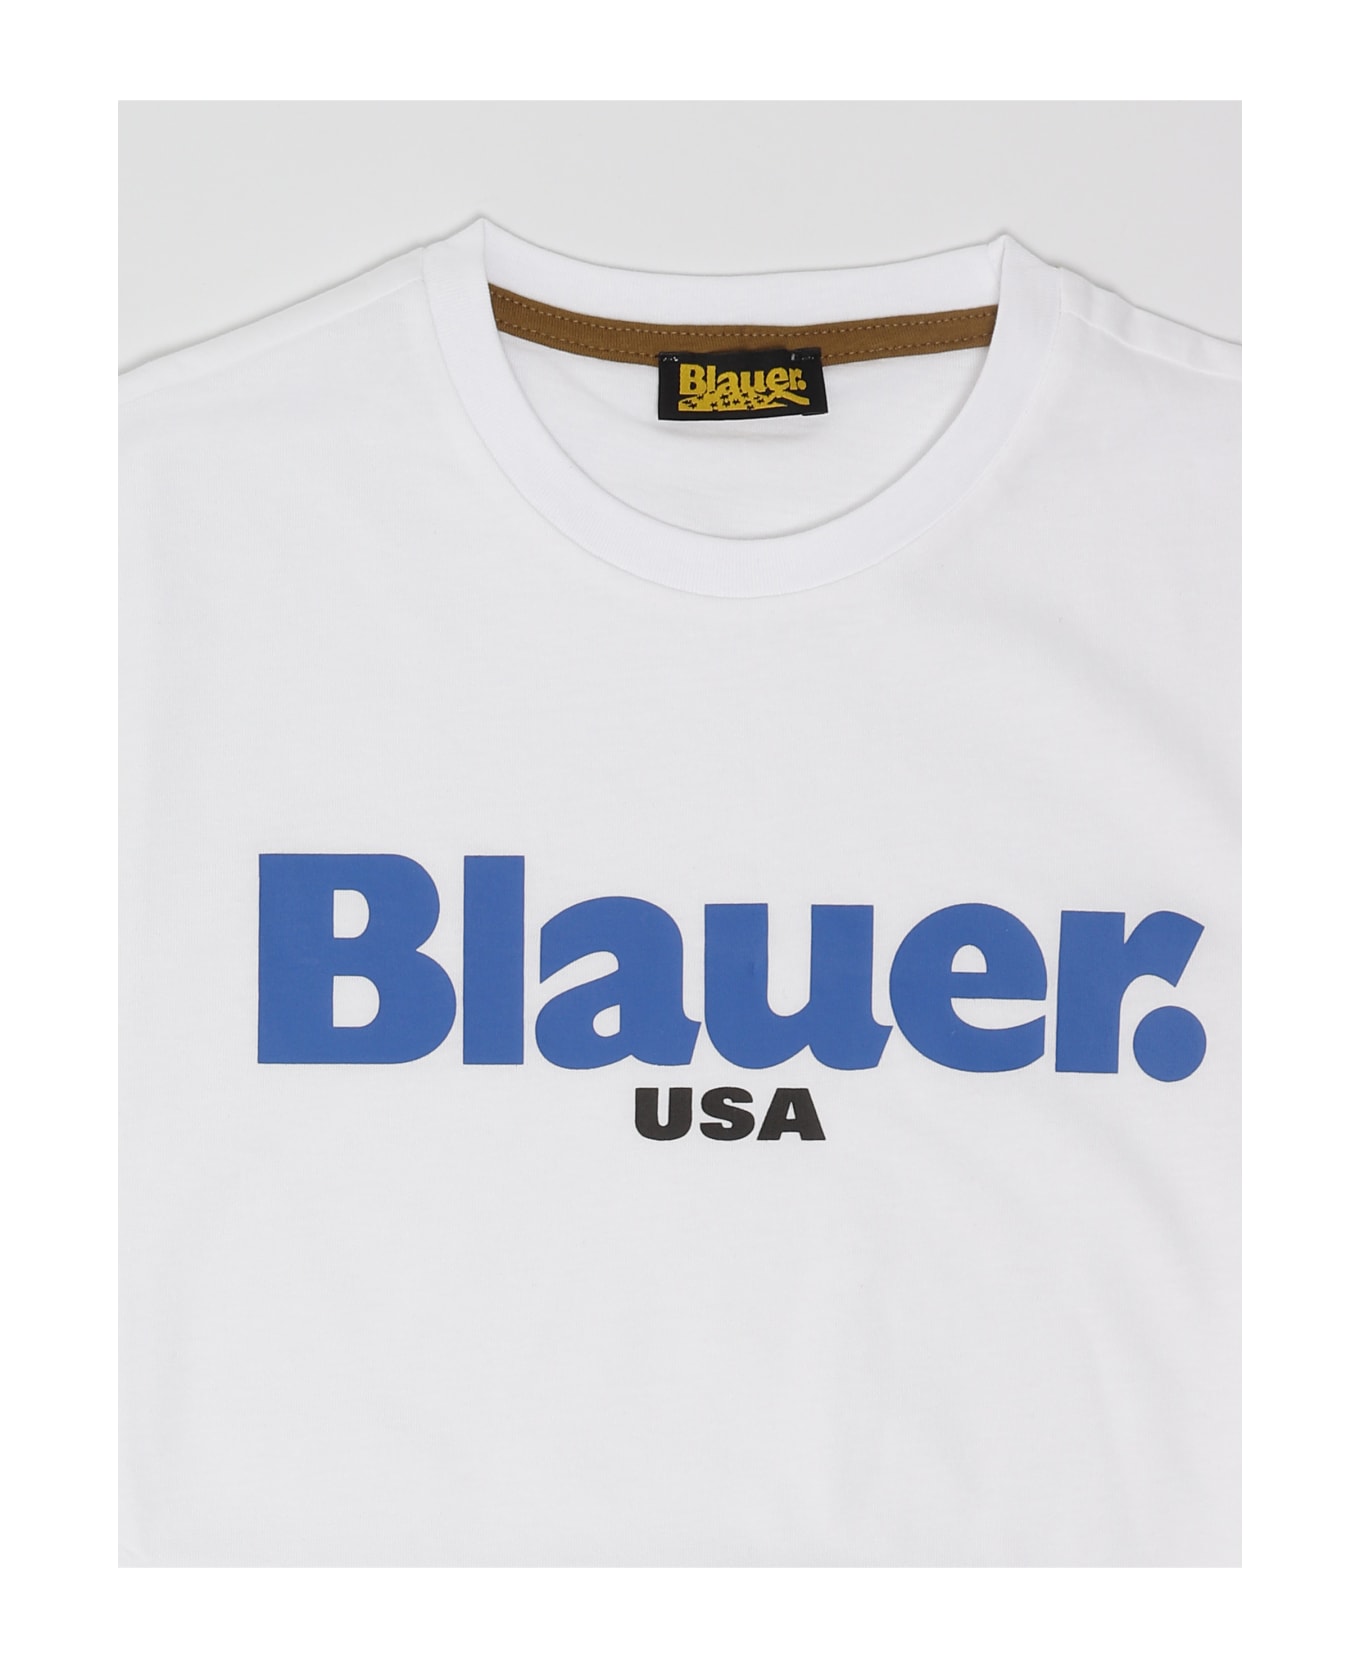 Blauer T-shirt T-shirt - BIANCO